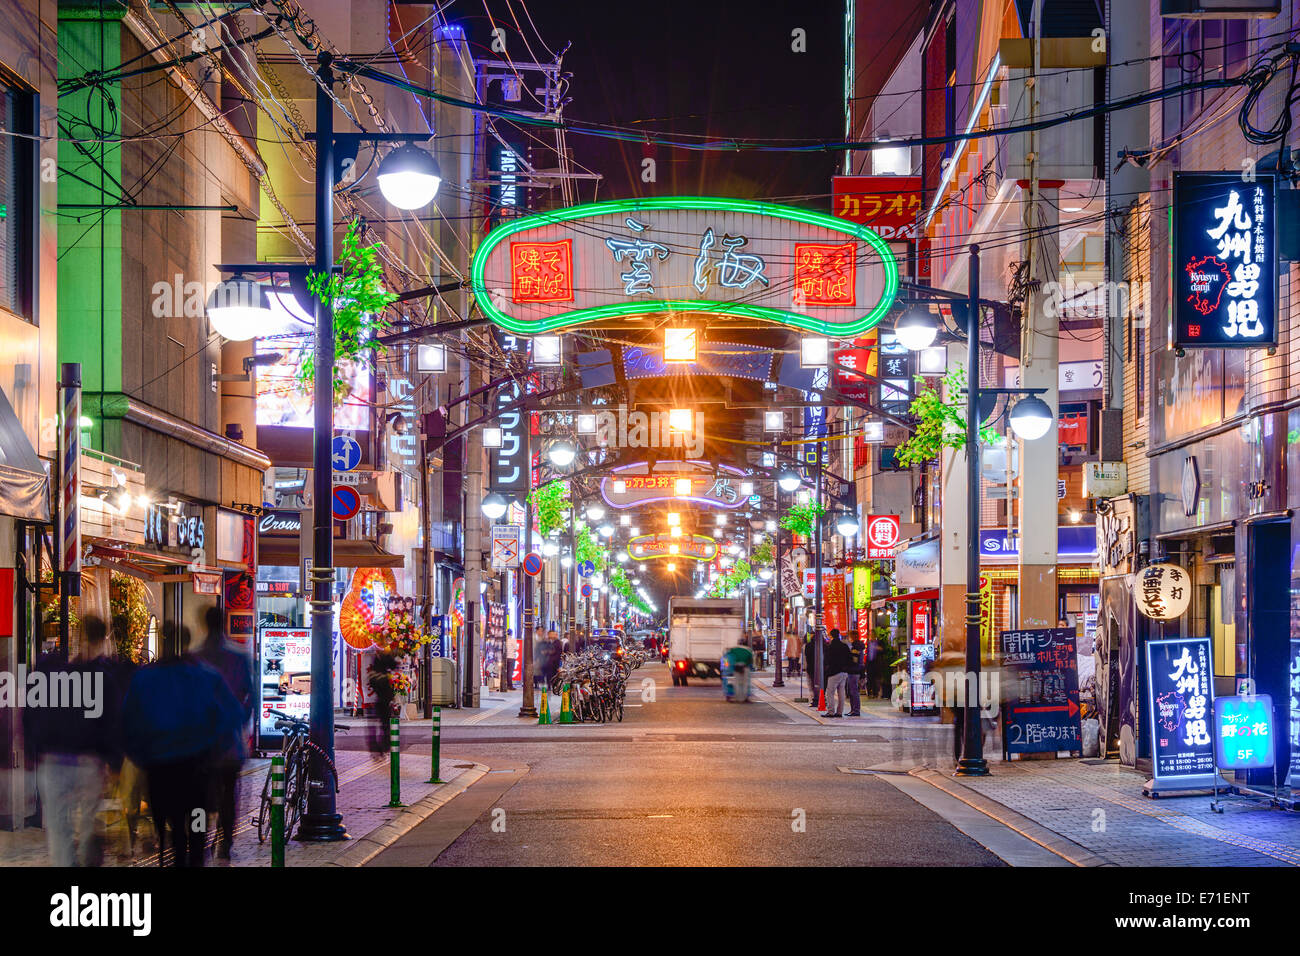 HIROSHIMA, 5 décembre 2012 - district de Nagarekawa nuit à Hiroshima. La région est le principal quartier de vie nocturne de la ville. Banque D'Images